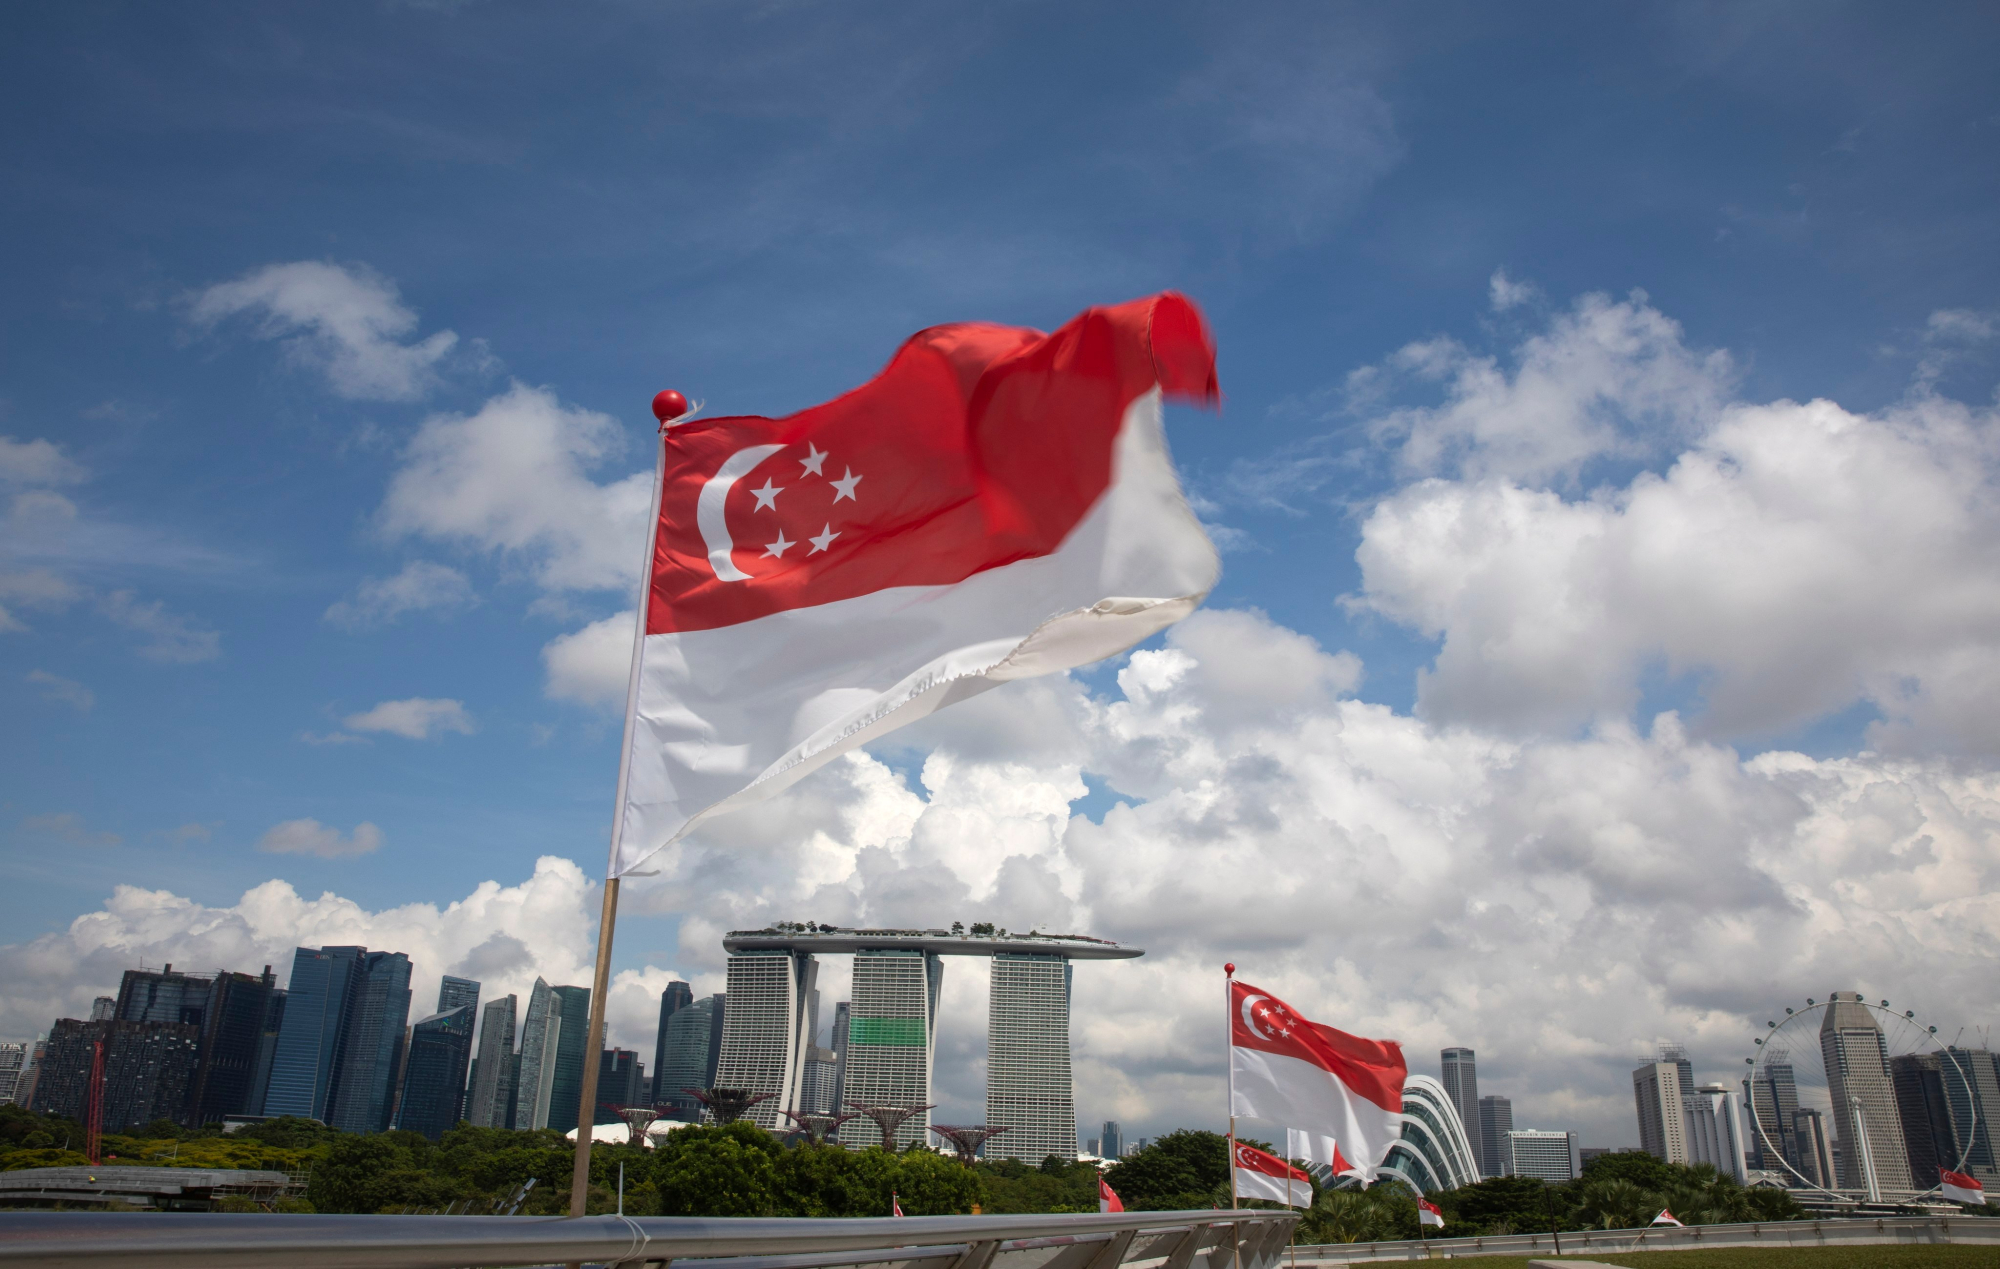 Thị trường bất động sản Singapore đang phát triển mạnh mẽ với những dự án được nhiều đầu tư lớn. Với việc đầu tư vào bất động sản Singapore, bạn sẽ được trải nghiệm nơi sống hoàn hảo, an cư lạc nghiệp, được hưởng các tiện ích hiện đại và đẳng cấp.